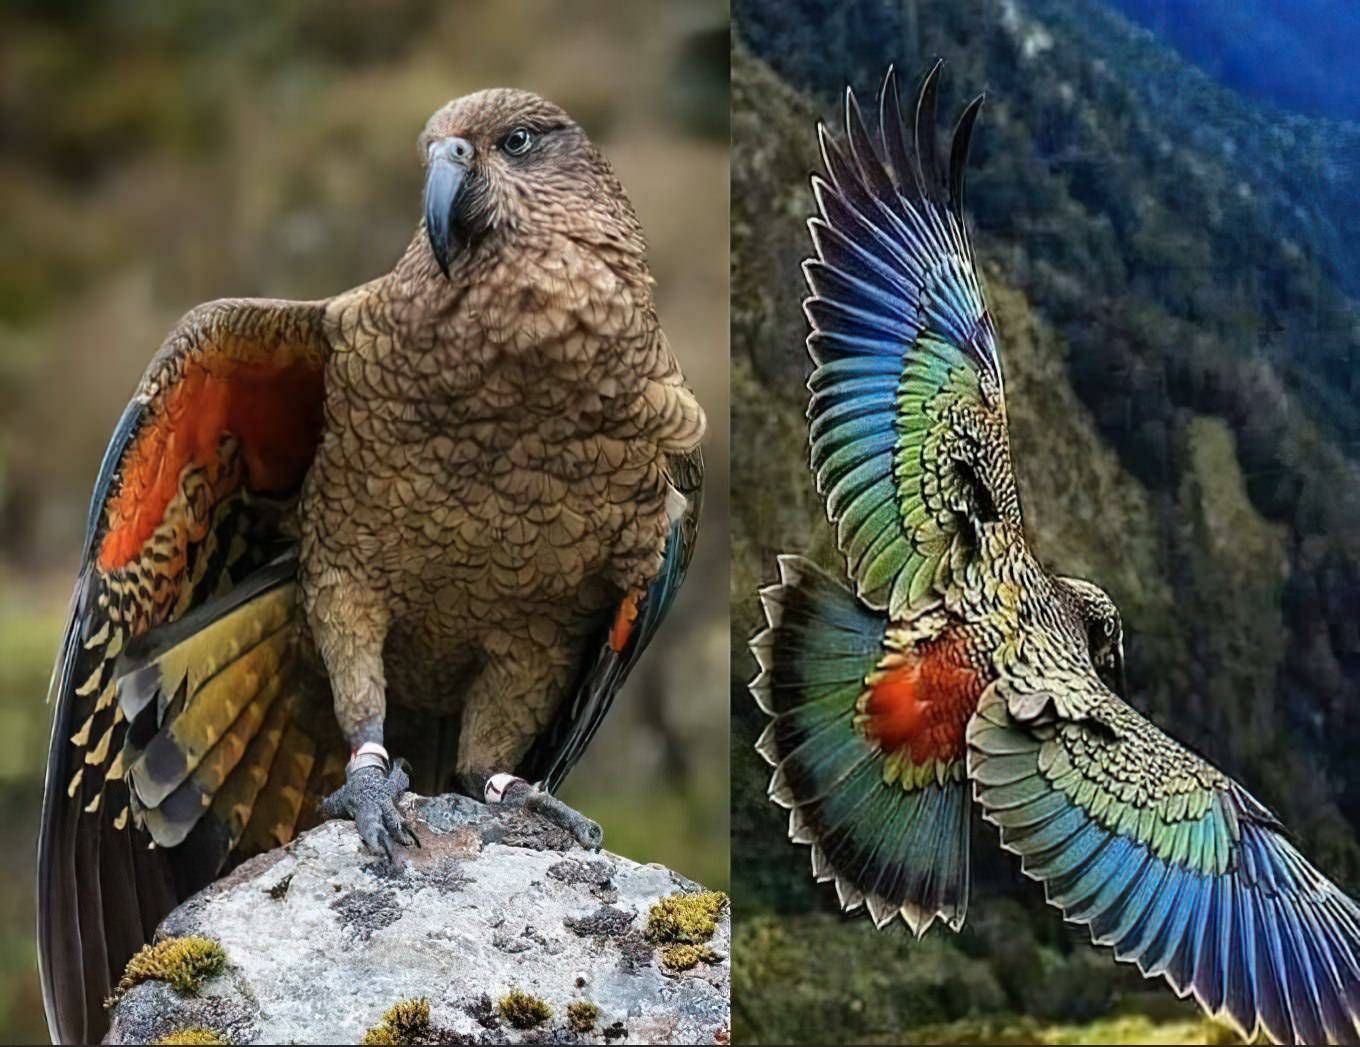 Кеа: описание, фото хищного попугая, как охотится на овец, интеллект и особенности птицы из новой зеландии